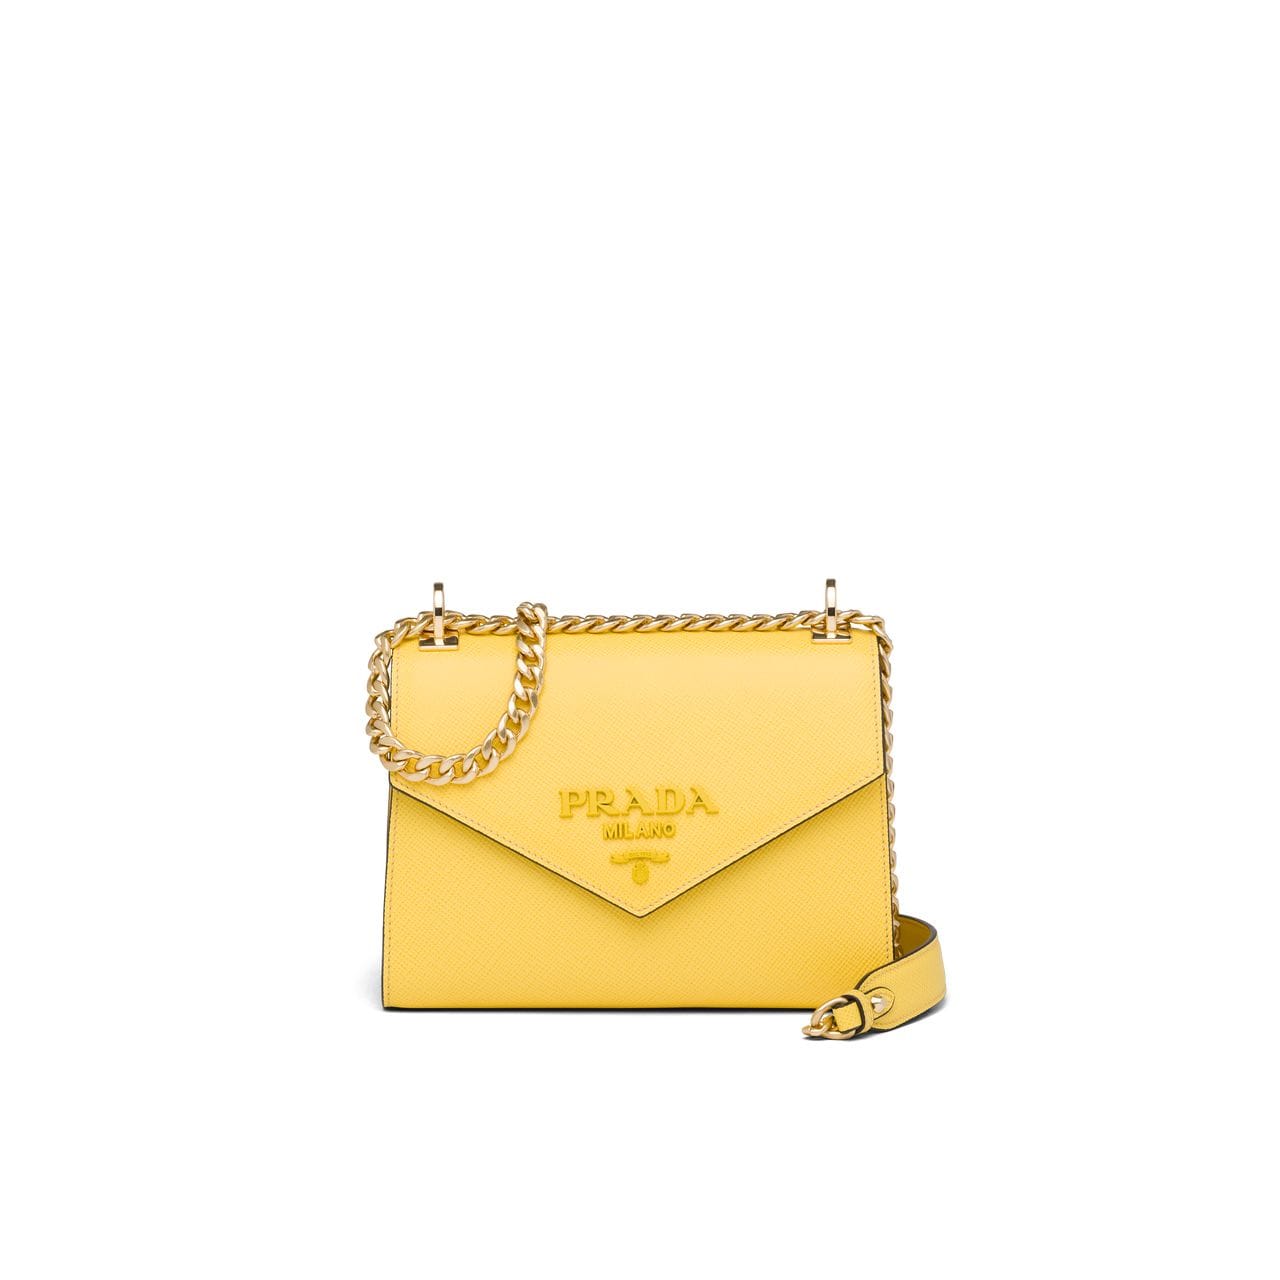 普拉达/PRADA Prada Monochrome 明黄色手袋